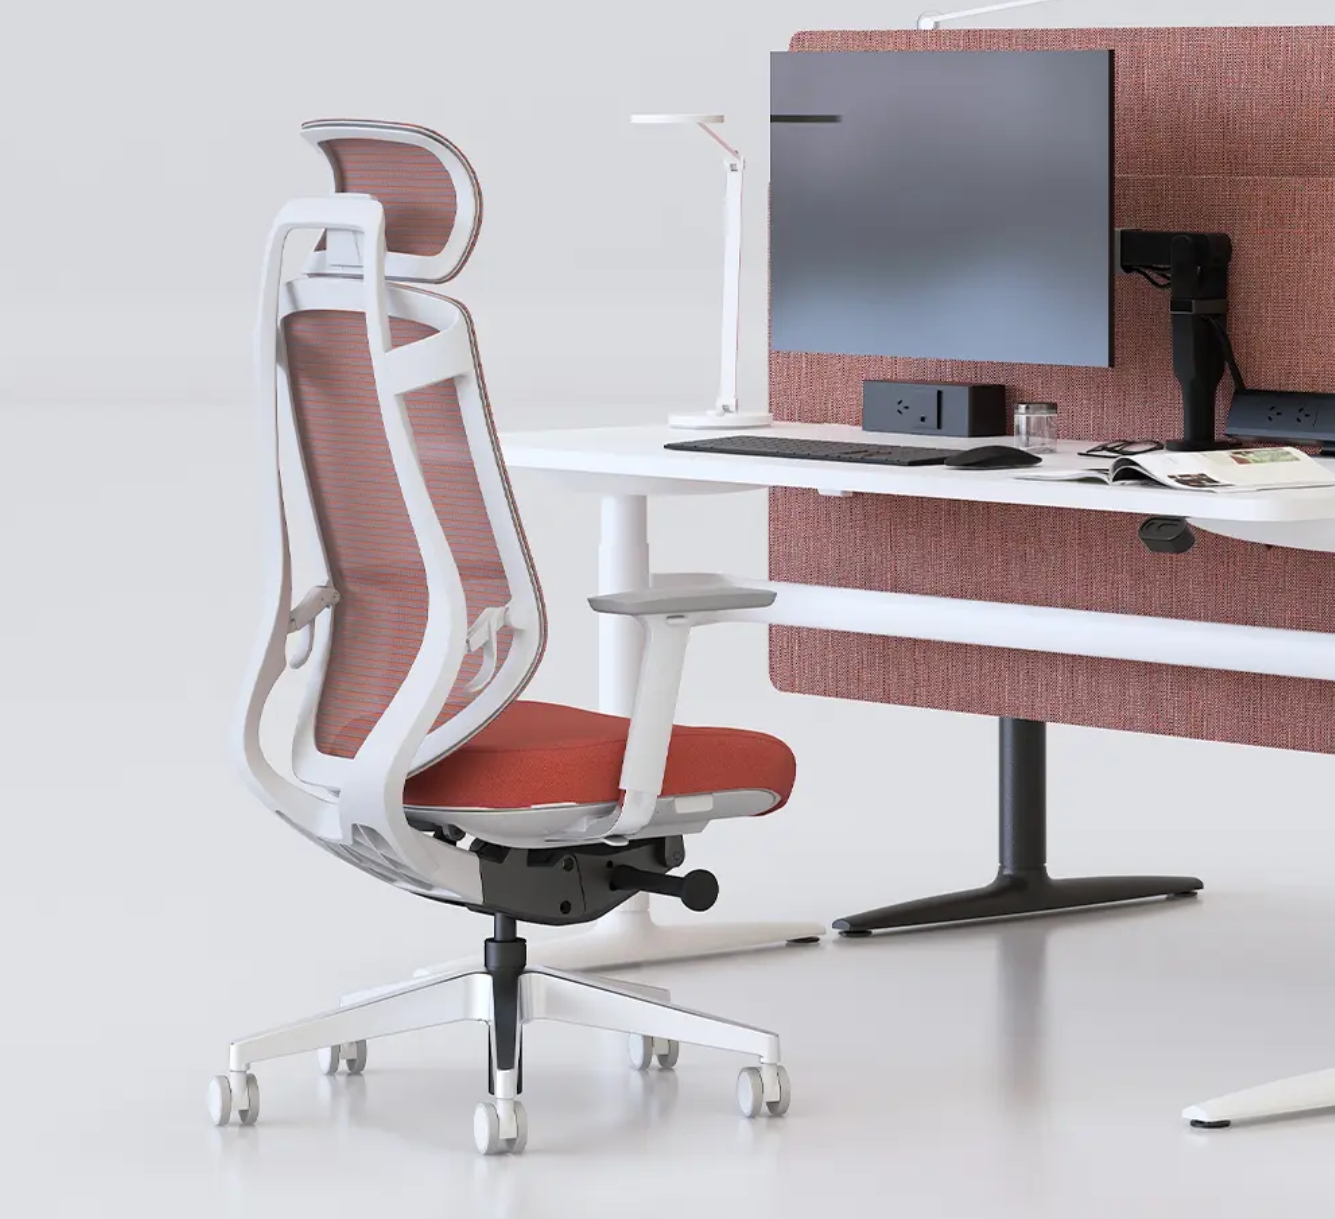 Guía completa para elegir, mantener y comprender los beneficios de los fabricantes de sillas de oficina ejecutiva